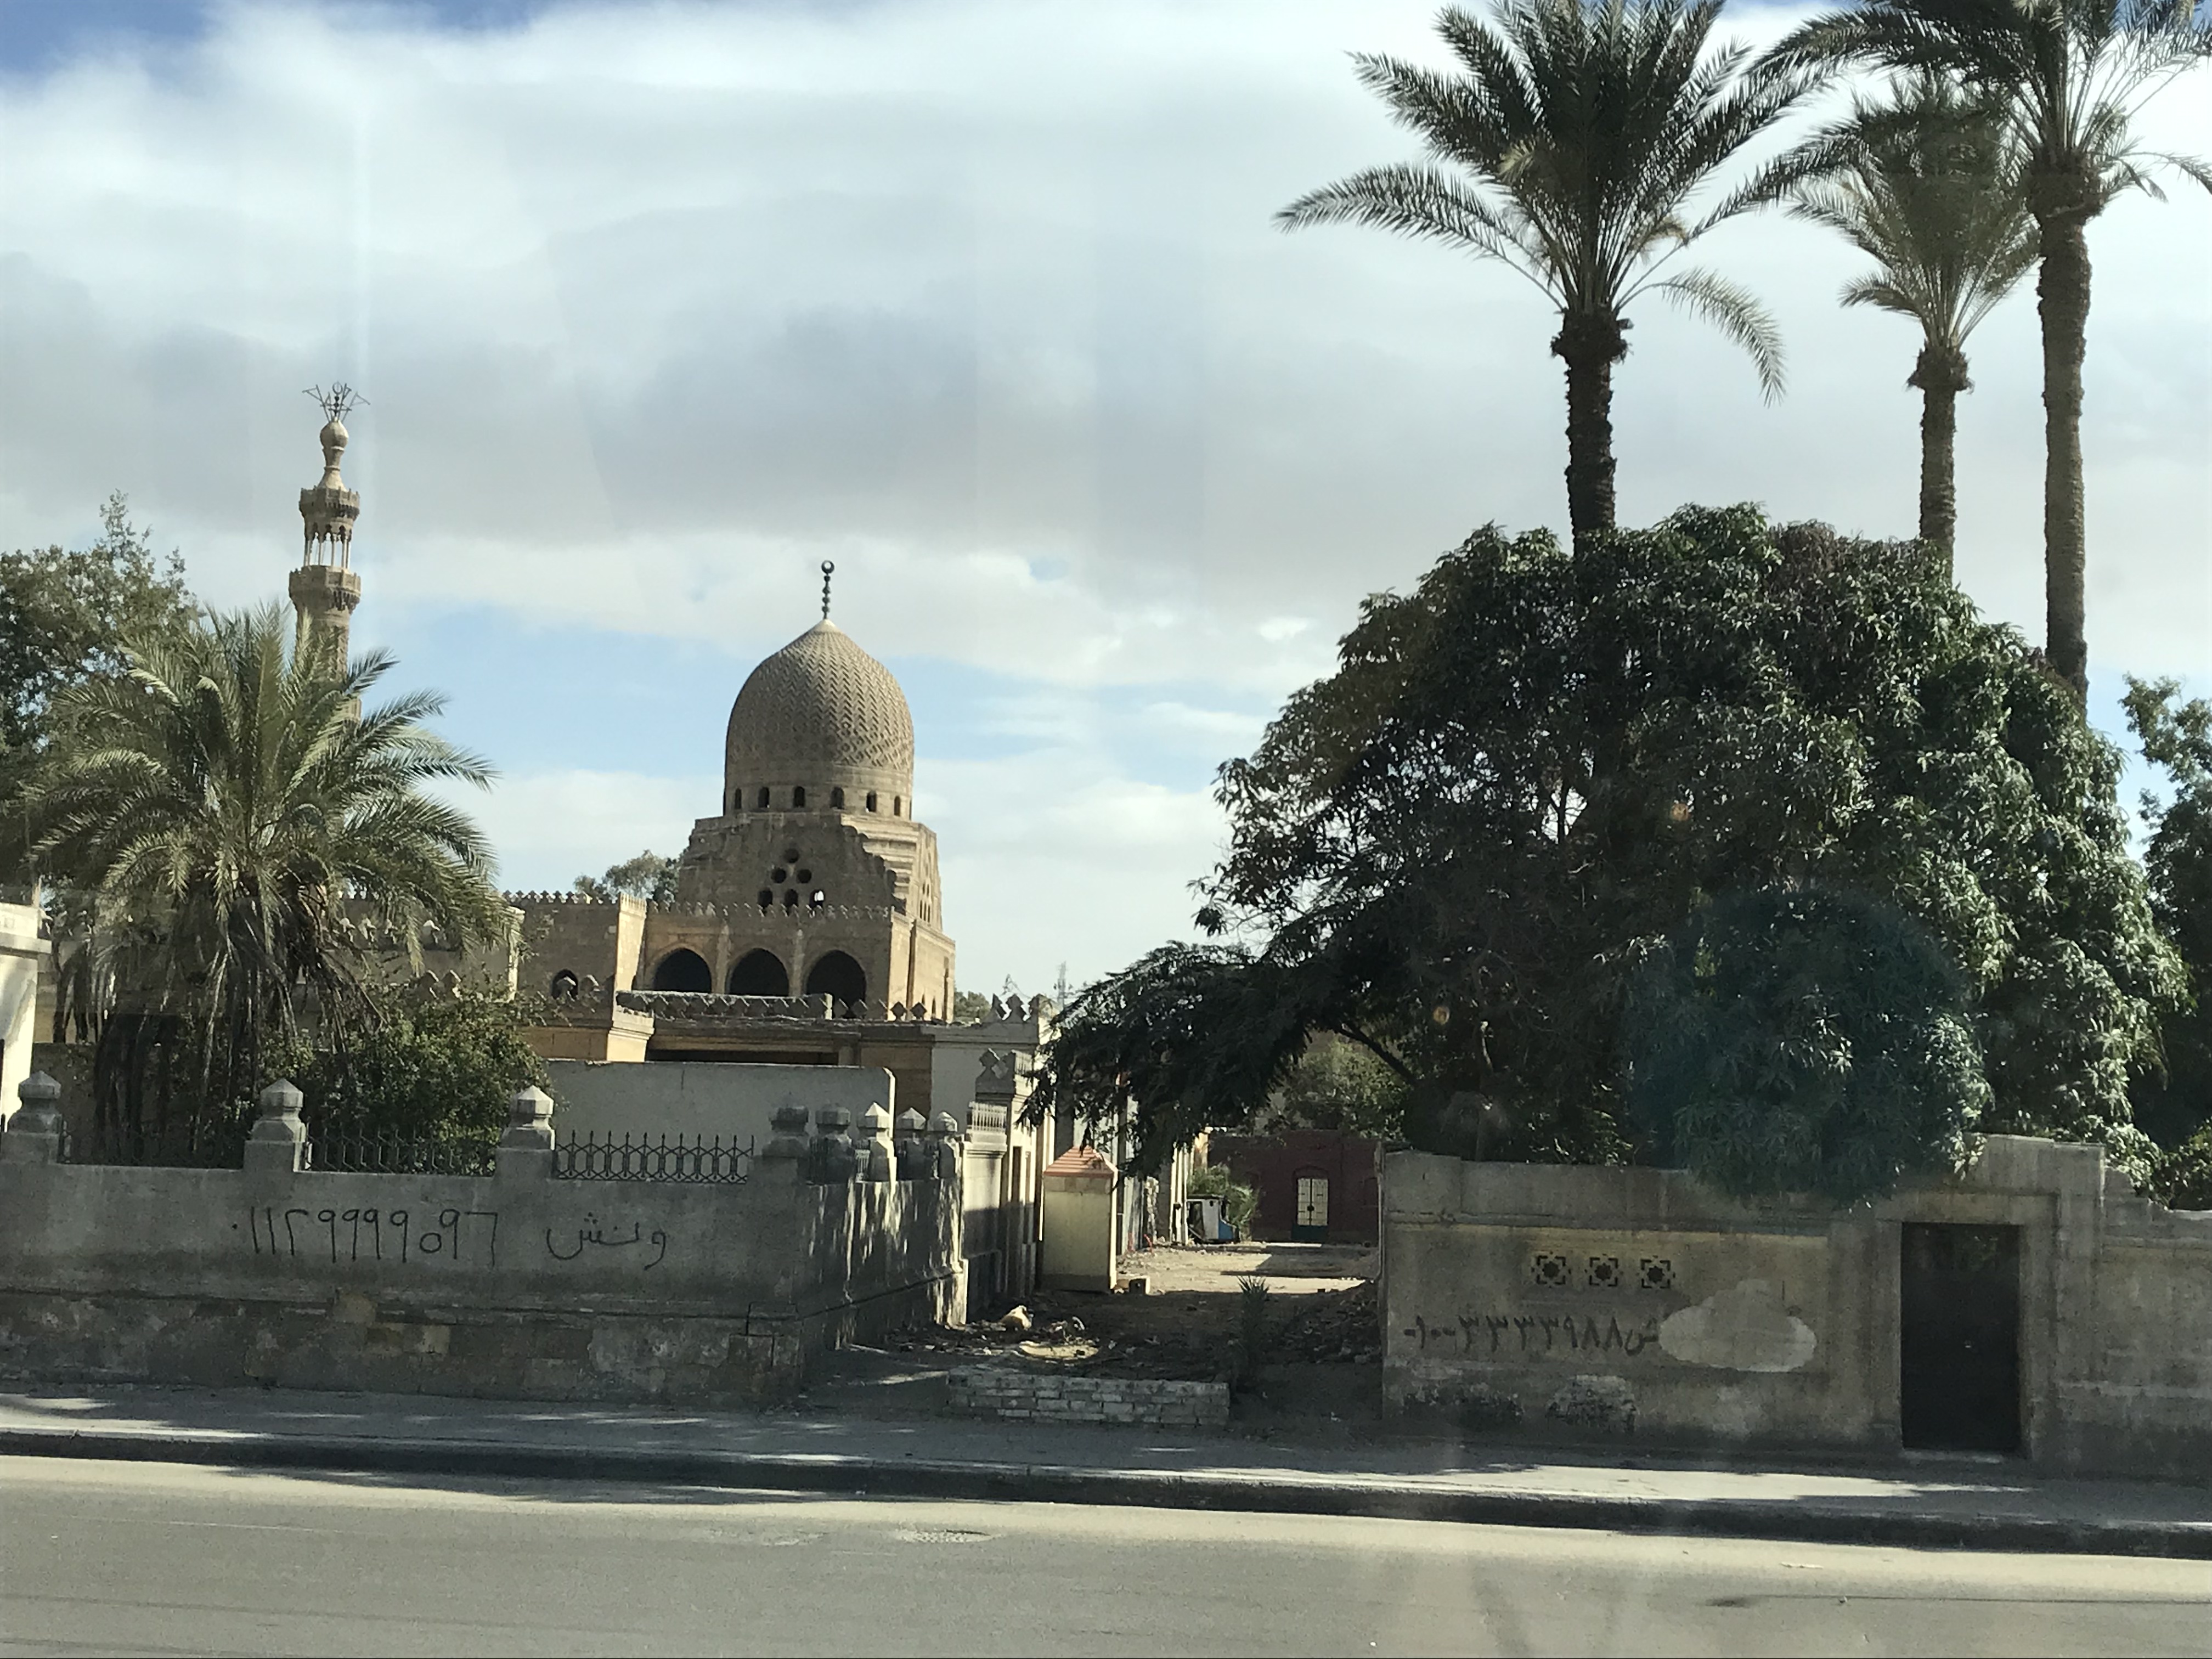 ./2018/16 - Egypt/12 - Cairo Day 4/IMG_4354.jpg